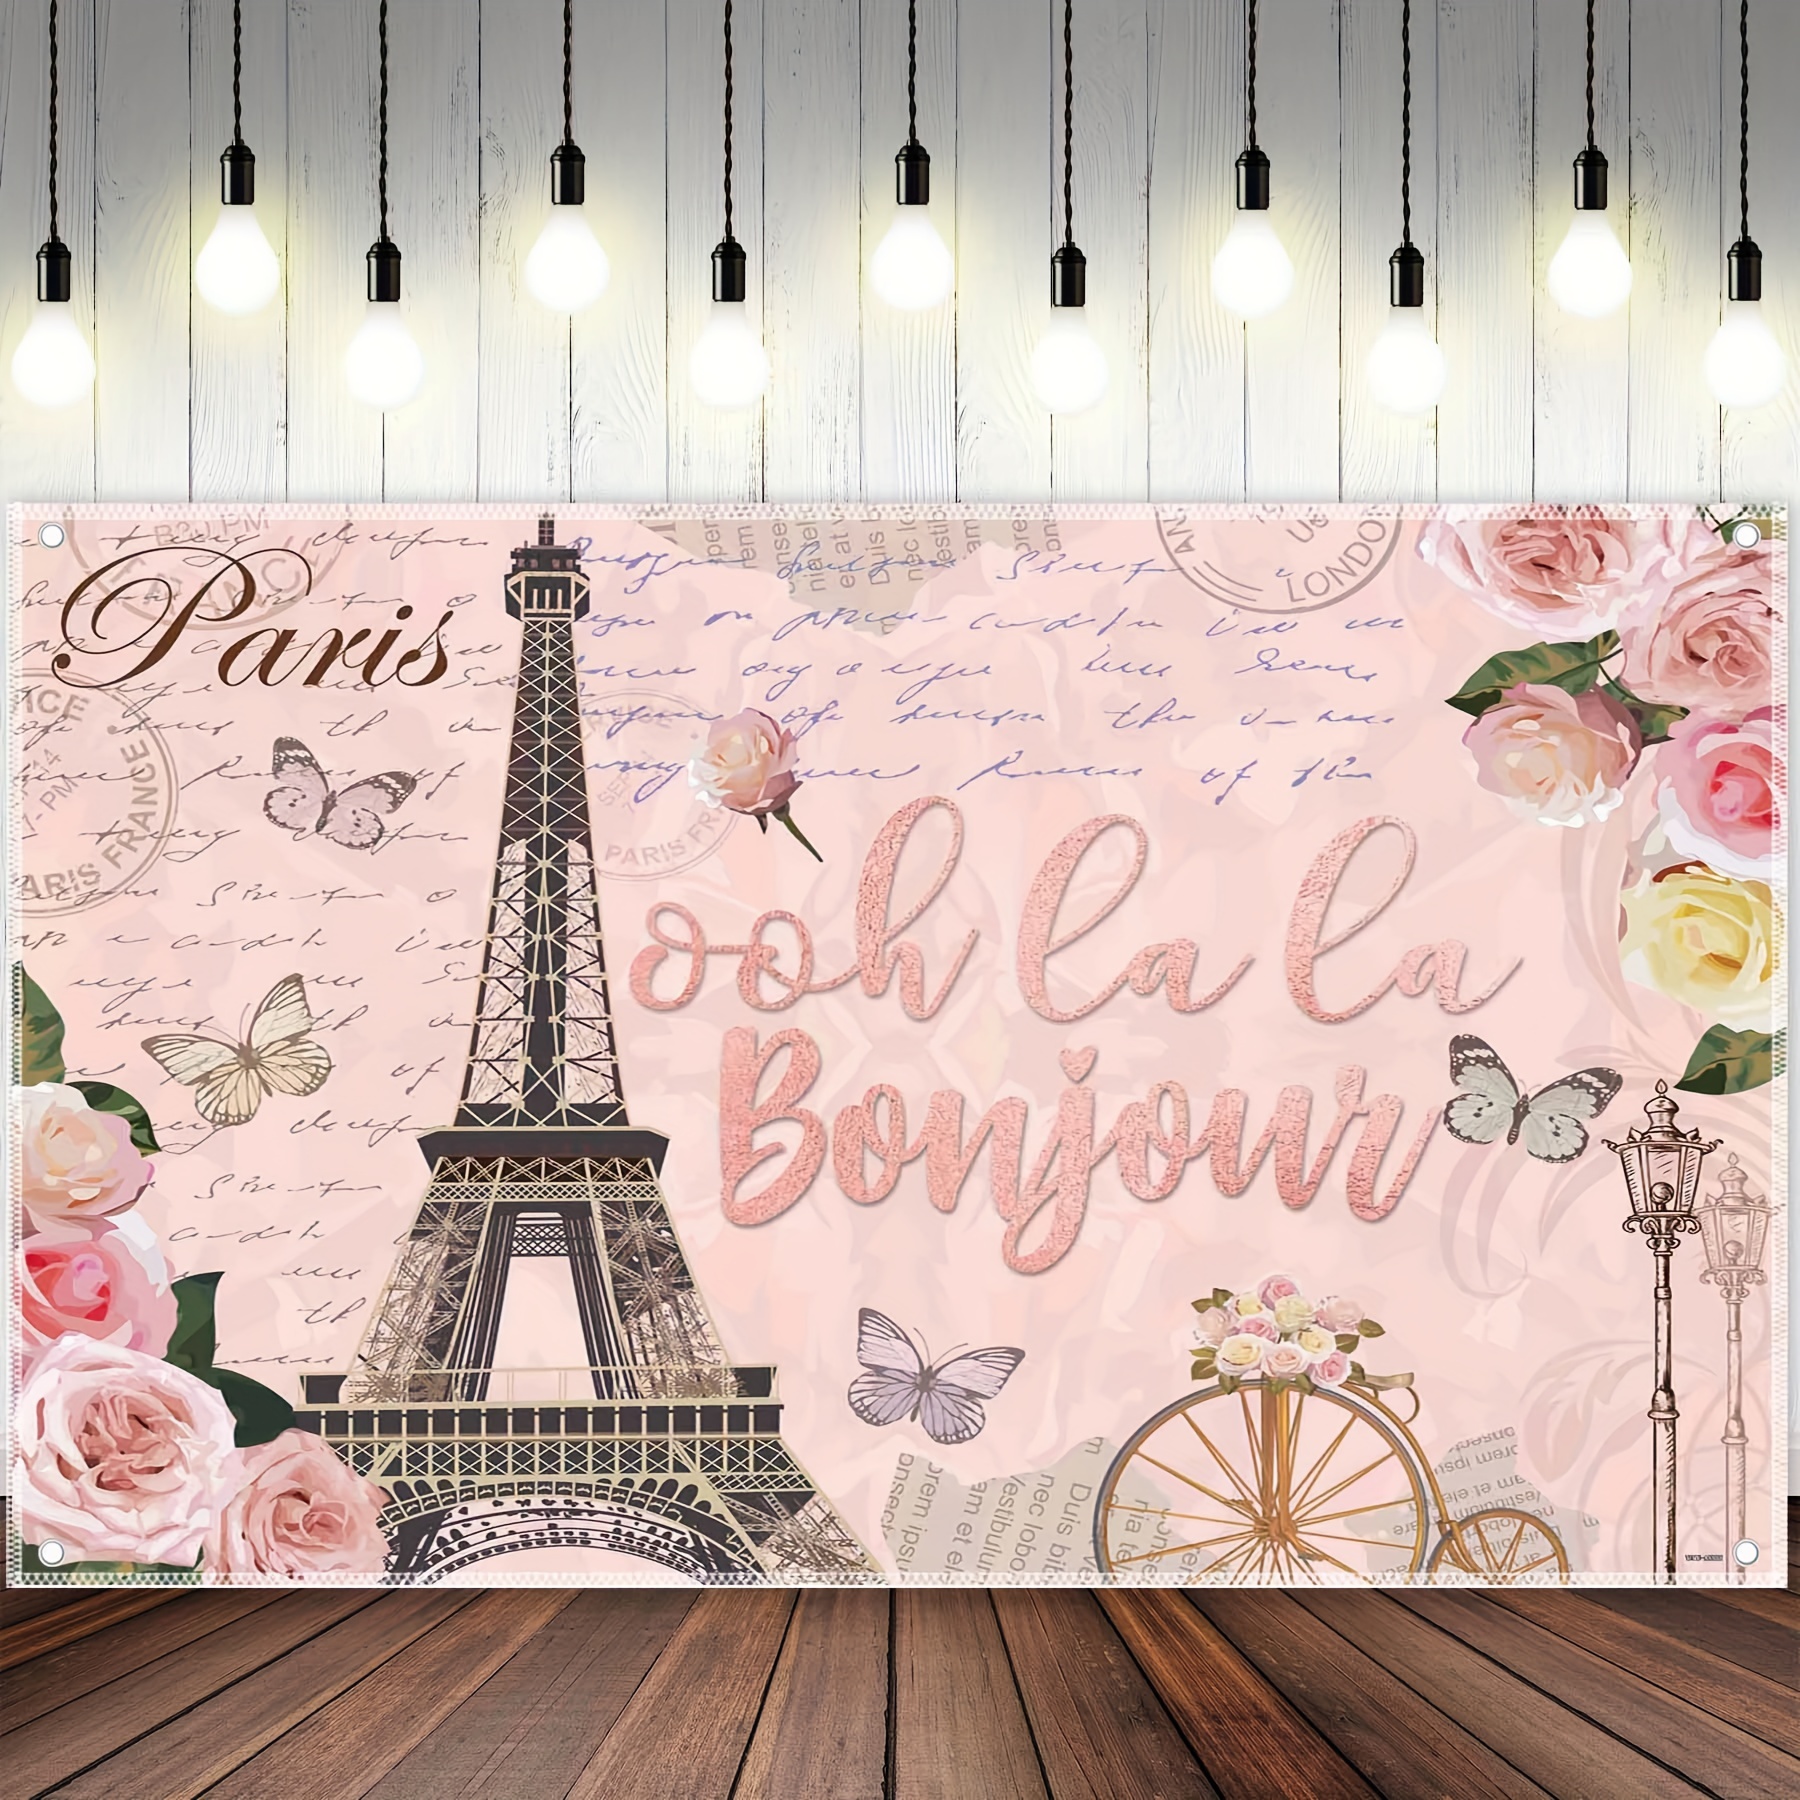 Vintage Paris Polyester Photography Backdrop, Ooh La La Bonjour